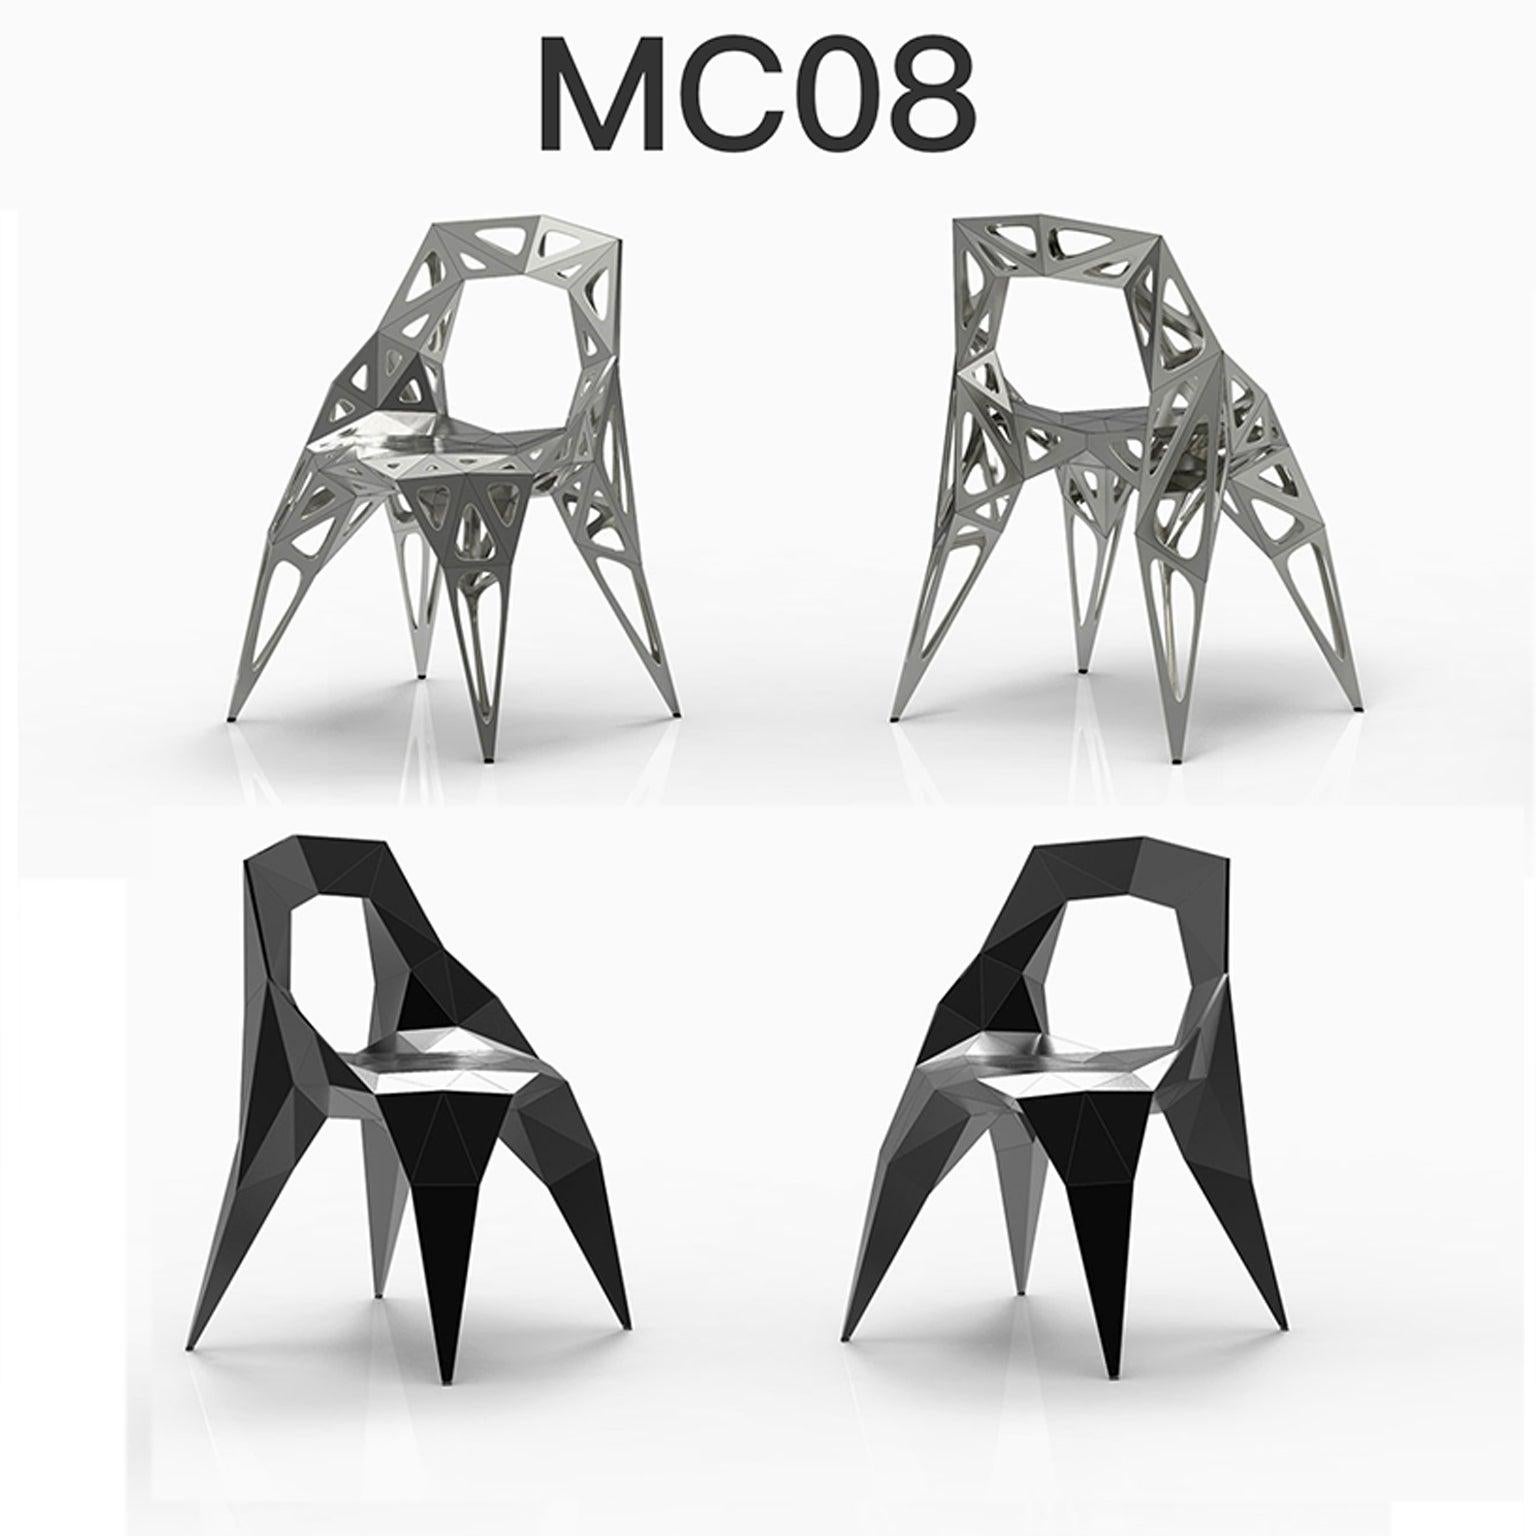 personnalisable
Extérieur et intérieur
4 types de chaises officielles / disponibles
solide
points
cadre
2 couleurs officielles / disponibles / finition en poli/mat
noir
argent

Le designer de meubles Zhoujie Zhang est connu pour